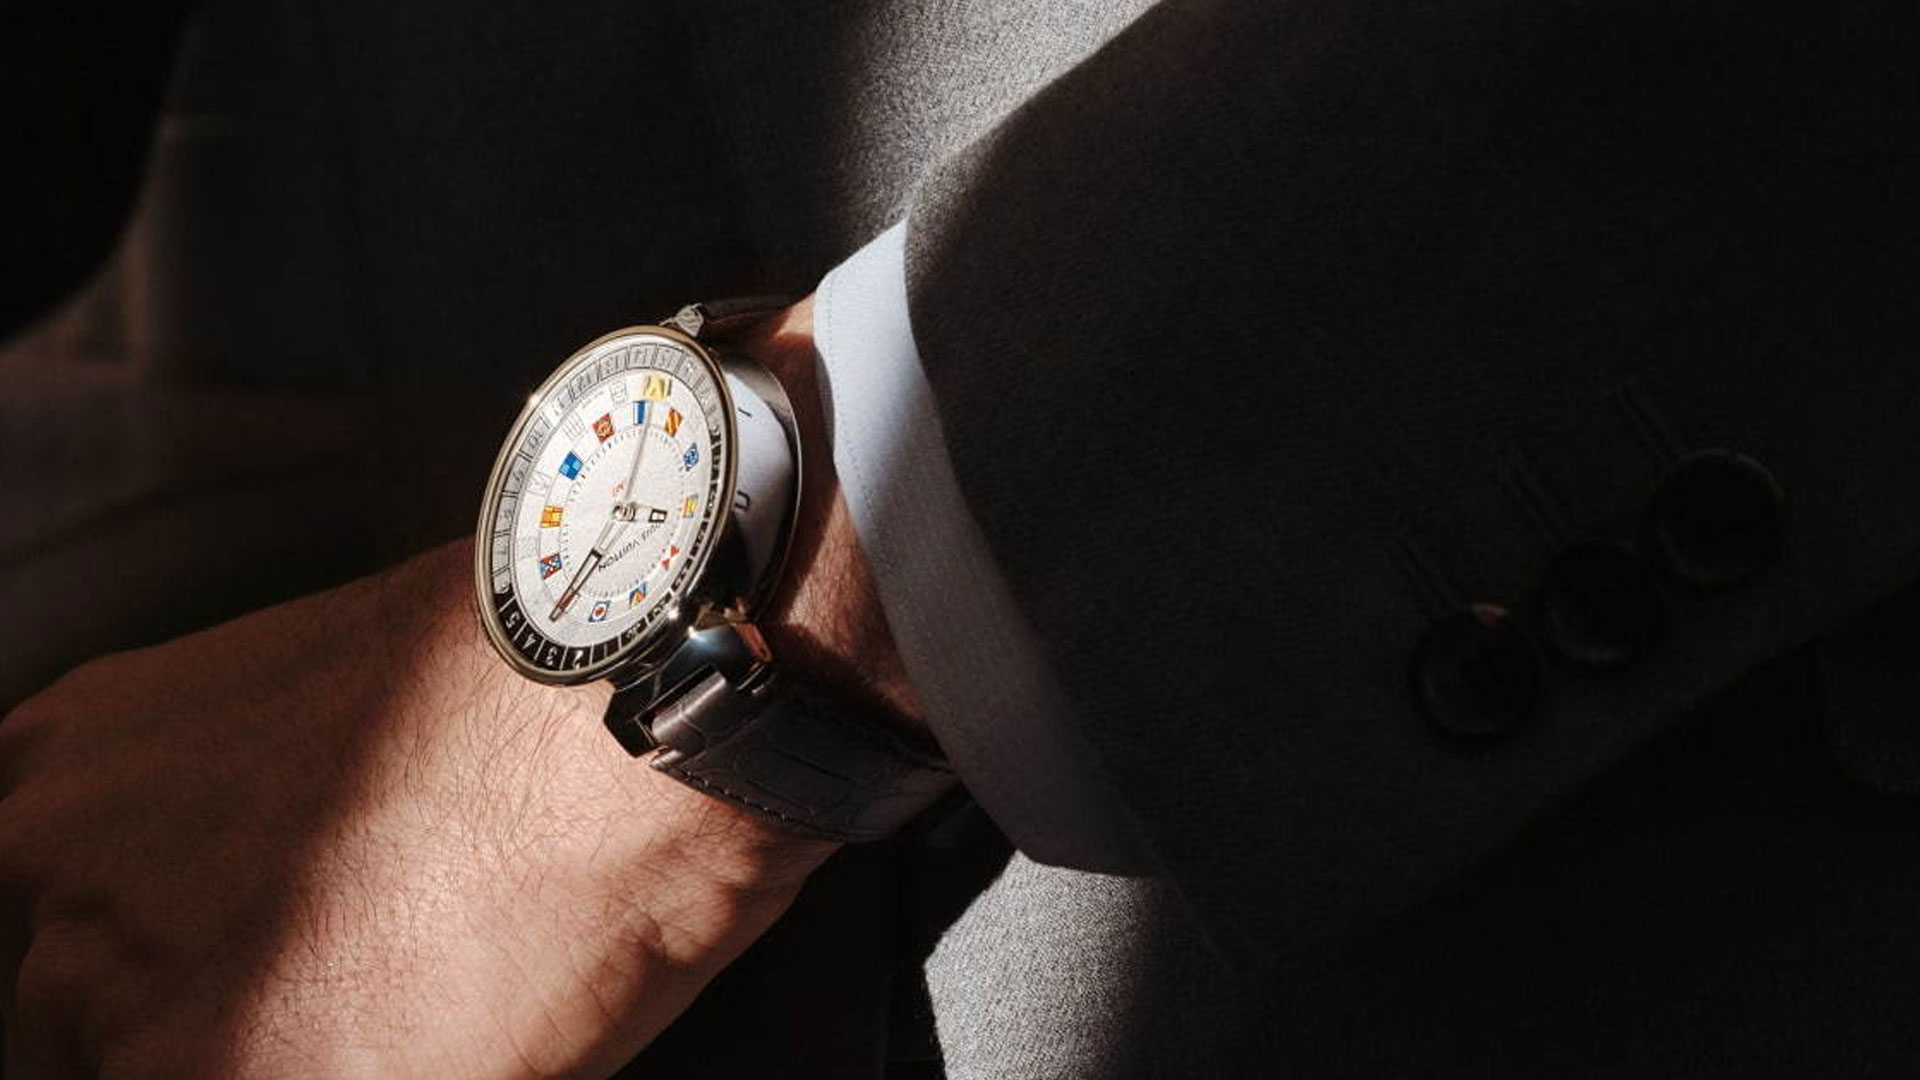 ルイヴィトンの腕時計「タンブール ムーン デュアルタイム」をご紹介